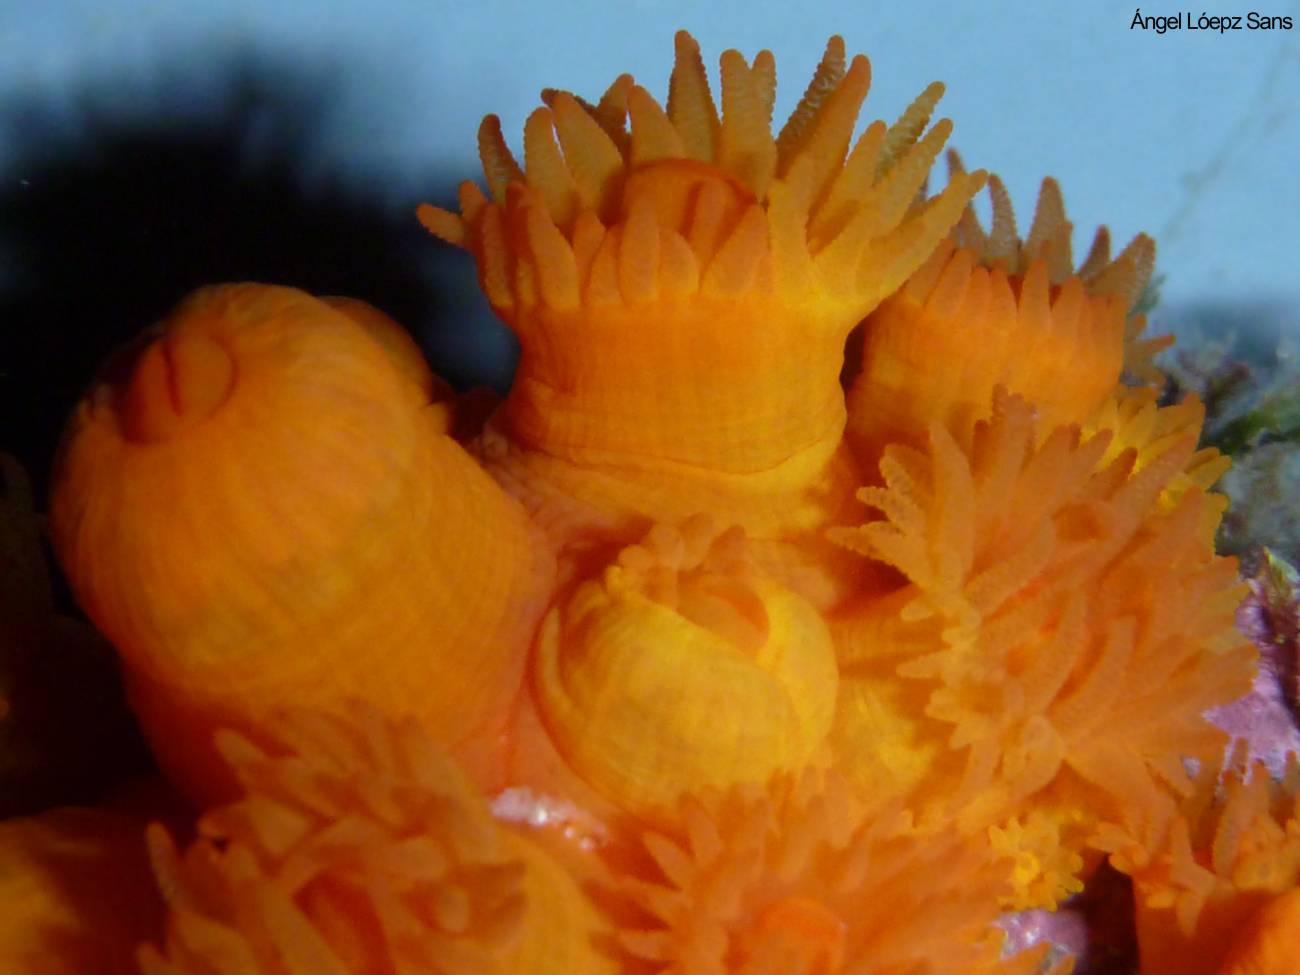 La acidificación de los océanos afecta la biología marina, como el coral anaranjado. Imagen: Ángel López Sans.